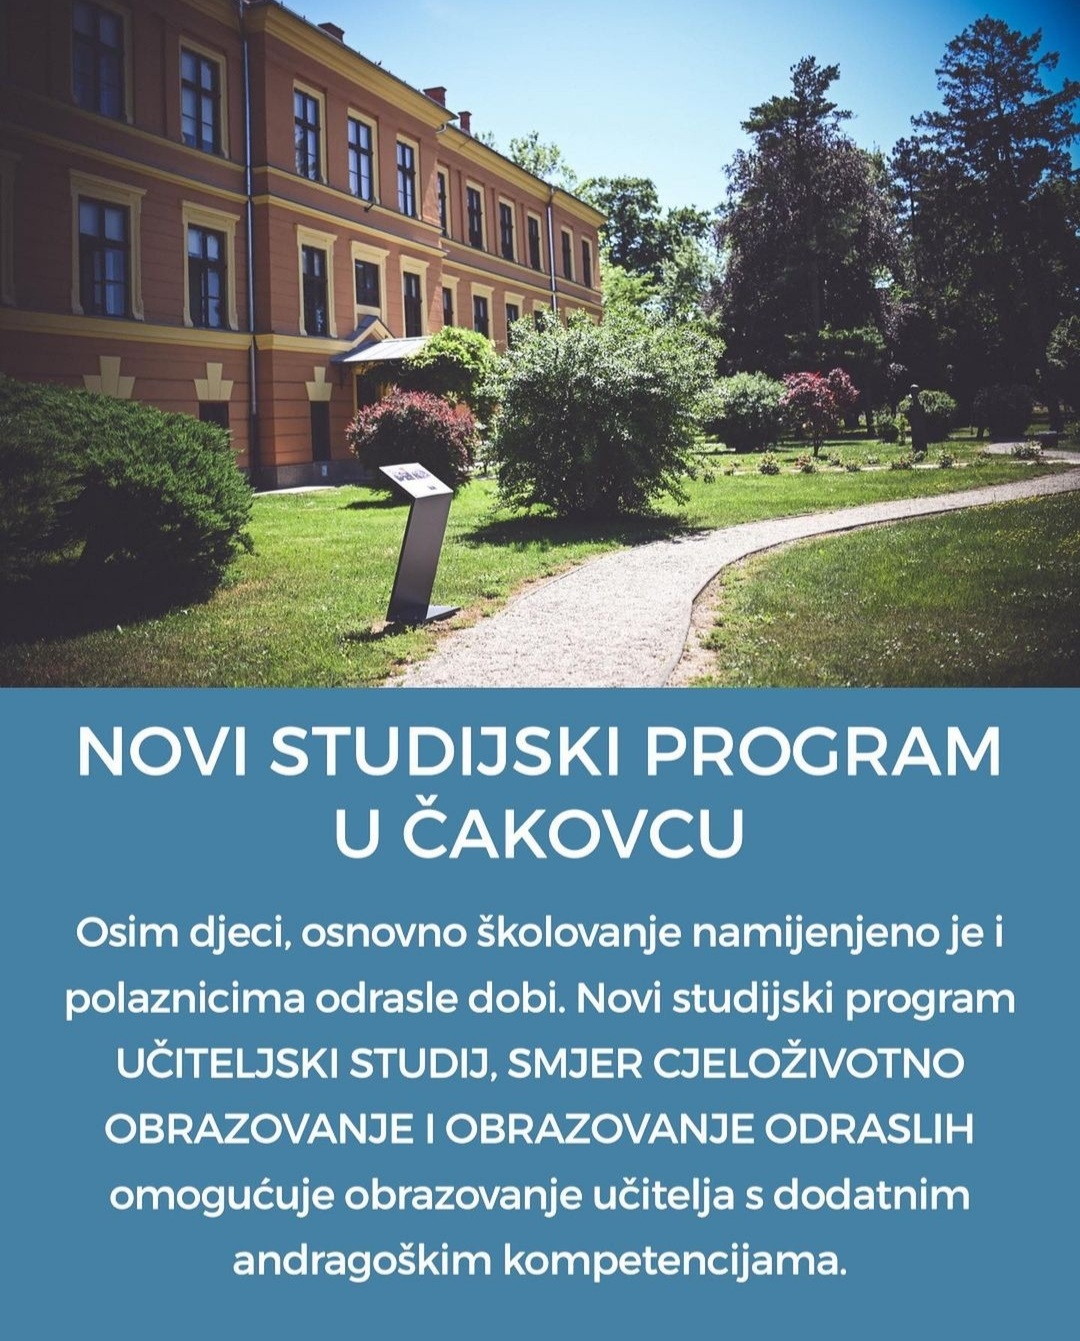 Novi studijski program na Učiteljskom studiju u Čakovcu – Cjeloživotno obrazovanje i obrazovanje odraslih